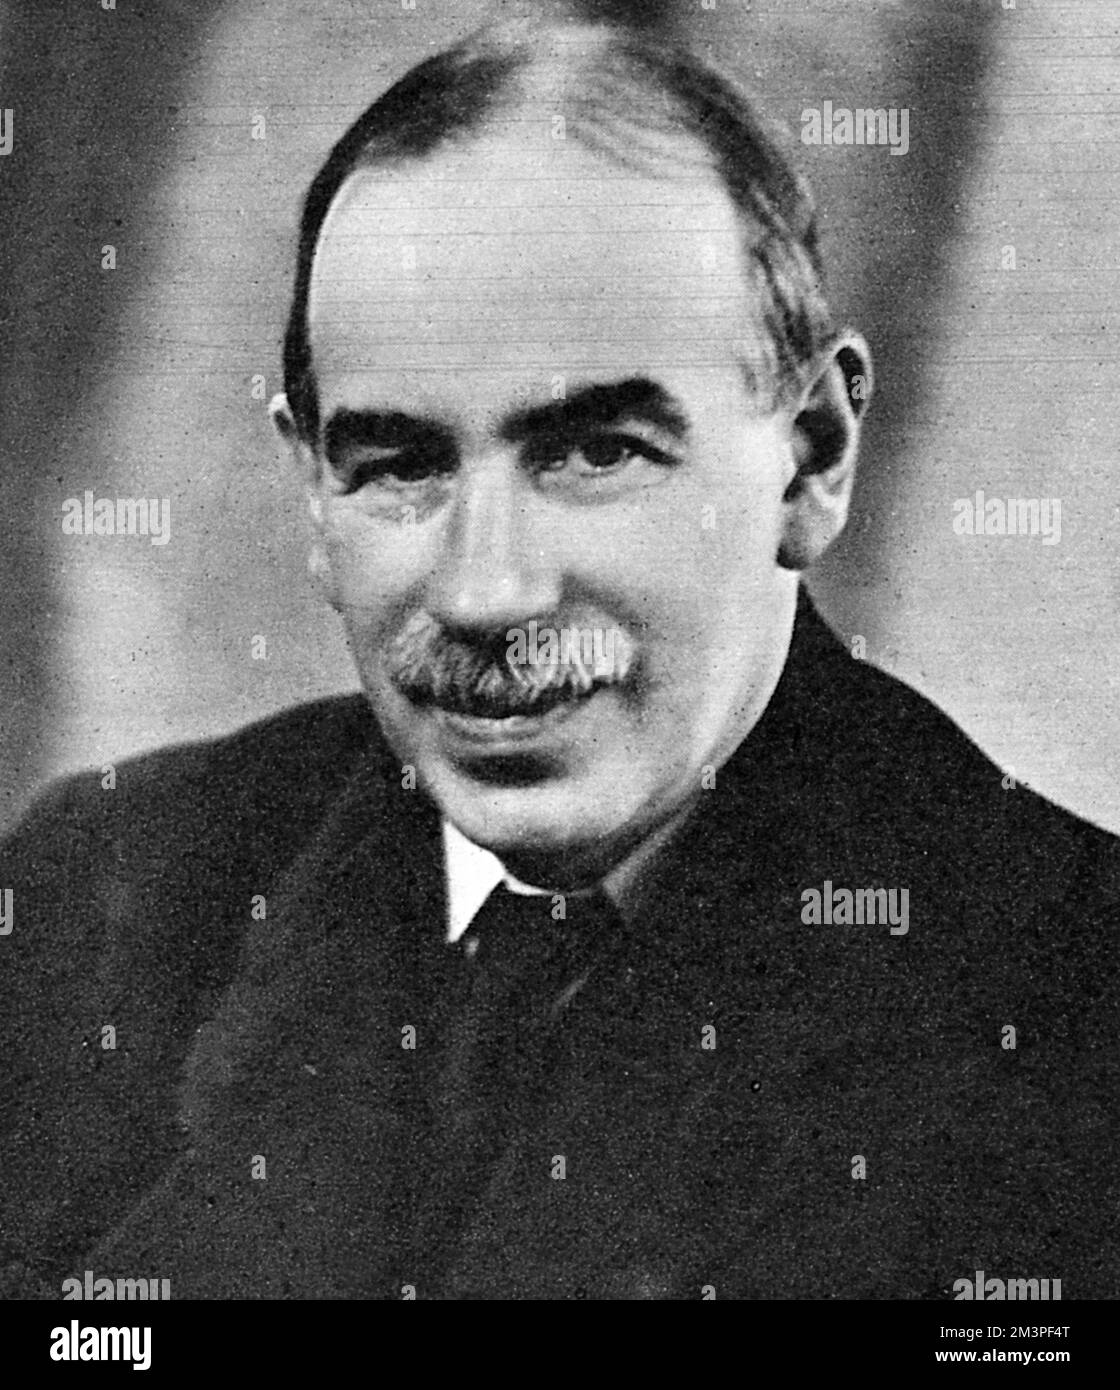 Lord (John Maynard) Keynes, 1883 - 1946. Uno dei più grandi e influenti economisti del 20th ° secolo. Data: 1946 Foto Stock